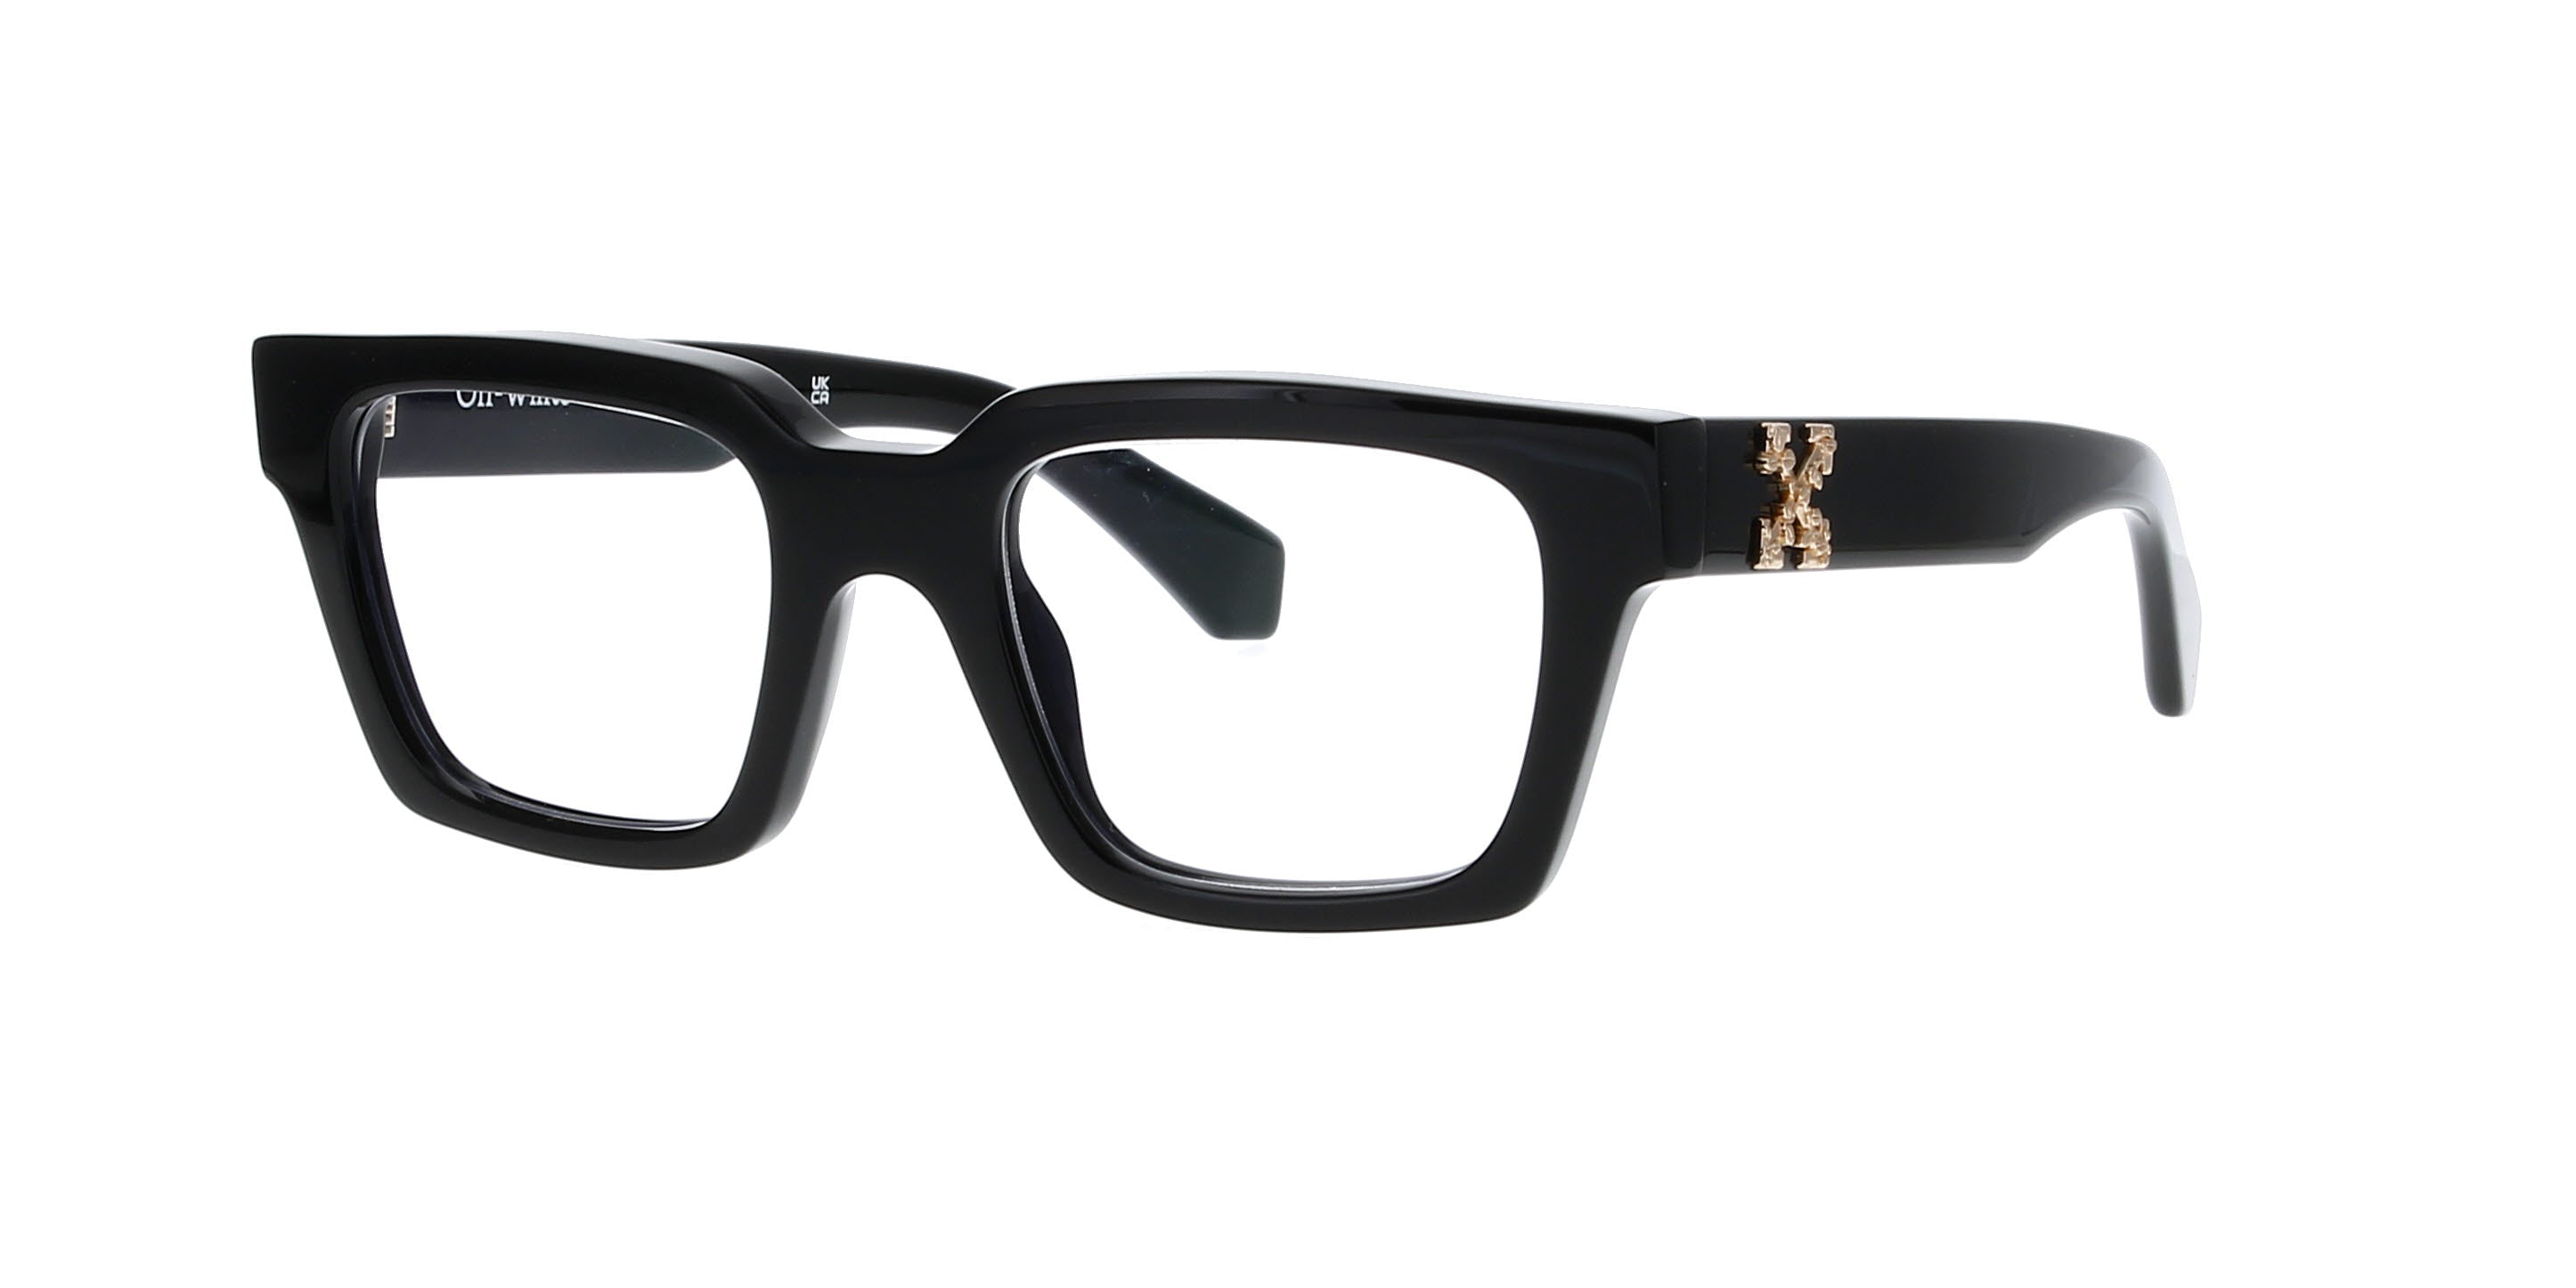 Off-White c/o Virgil Abloh Roma Sunglasses for Men